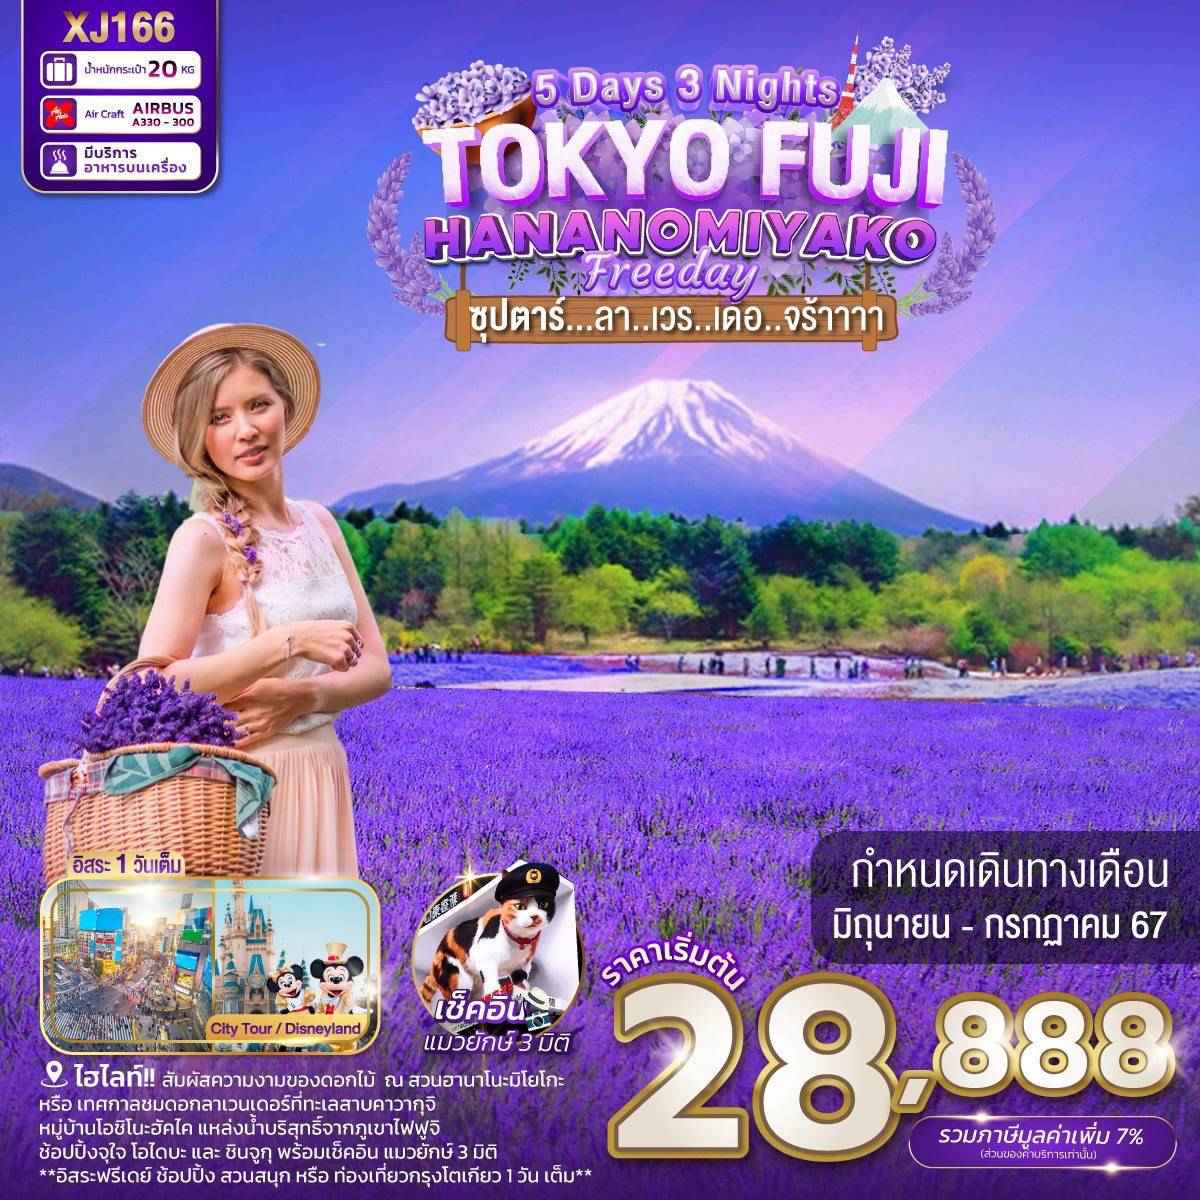 ทัวร์ญี่ปุ่น AJP65-09 TOKYO FUJI HANANOMIYAKO FREEDAY ลาเวนเดอร์ XJ166 (270767)